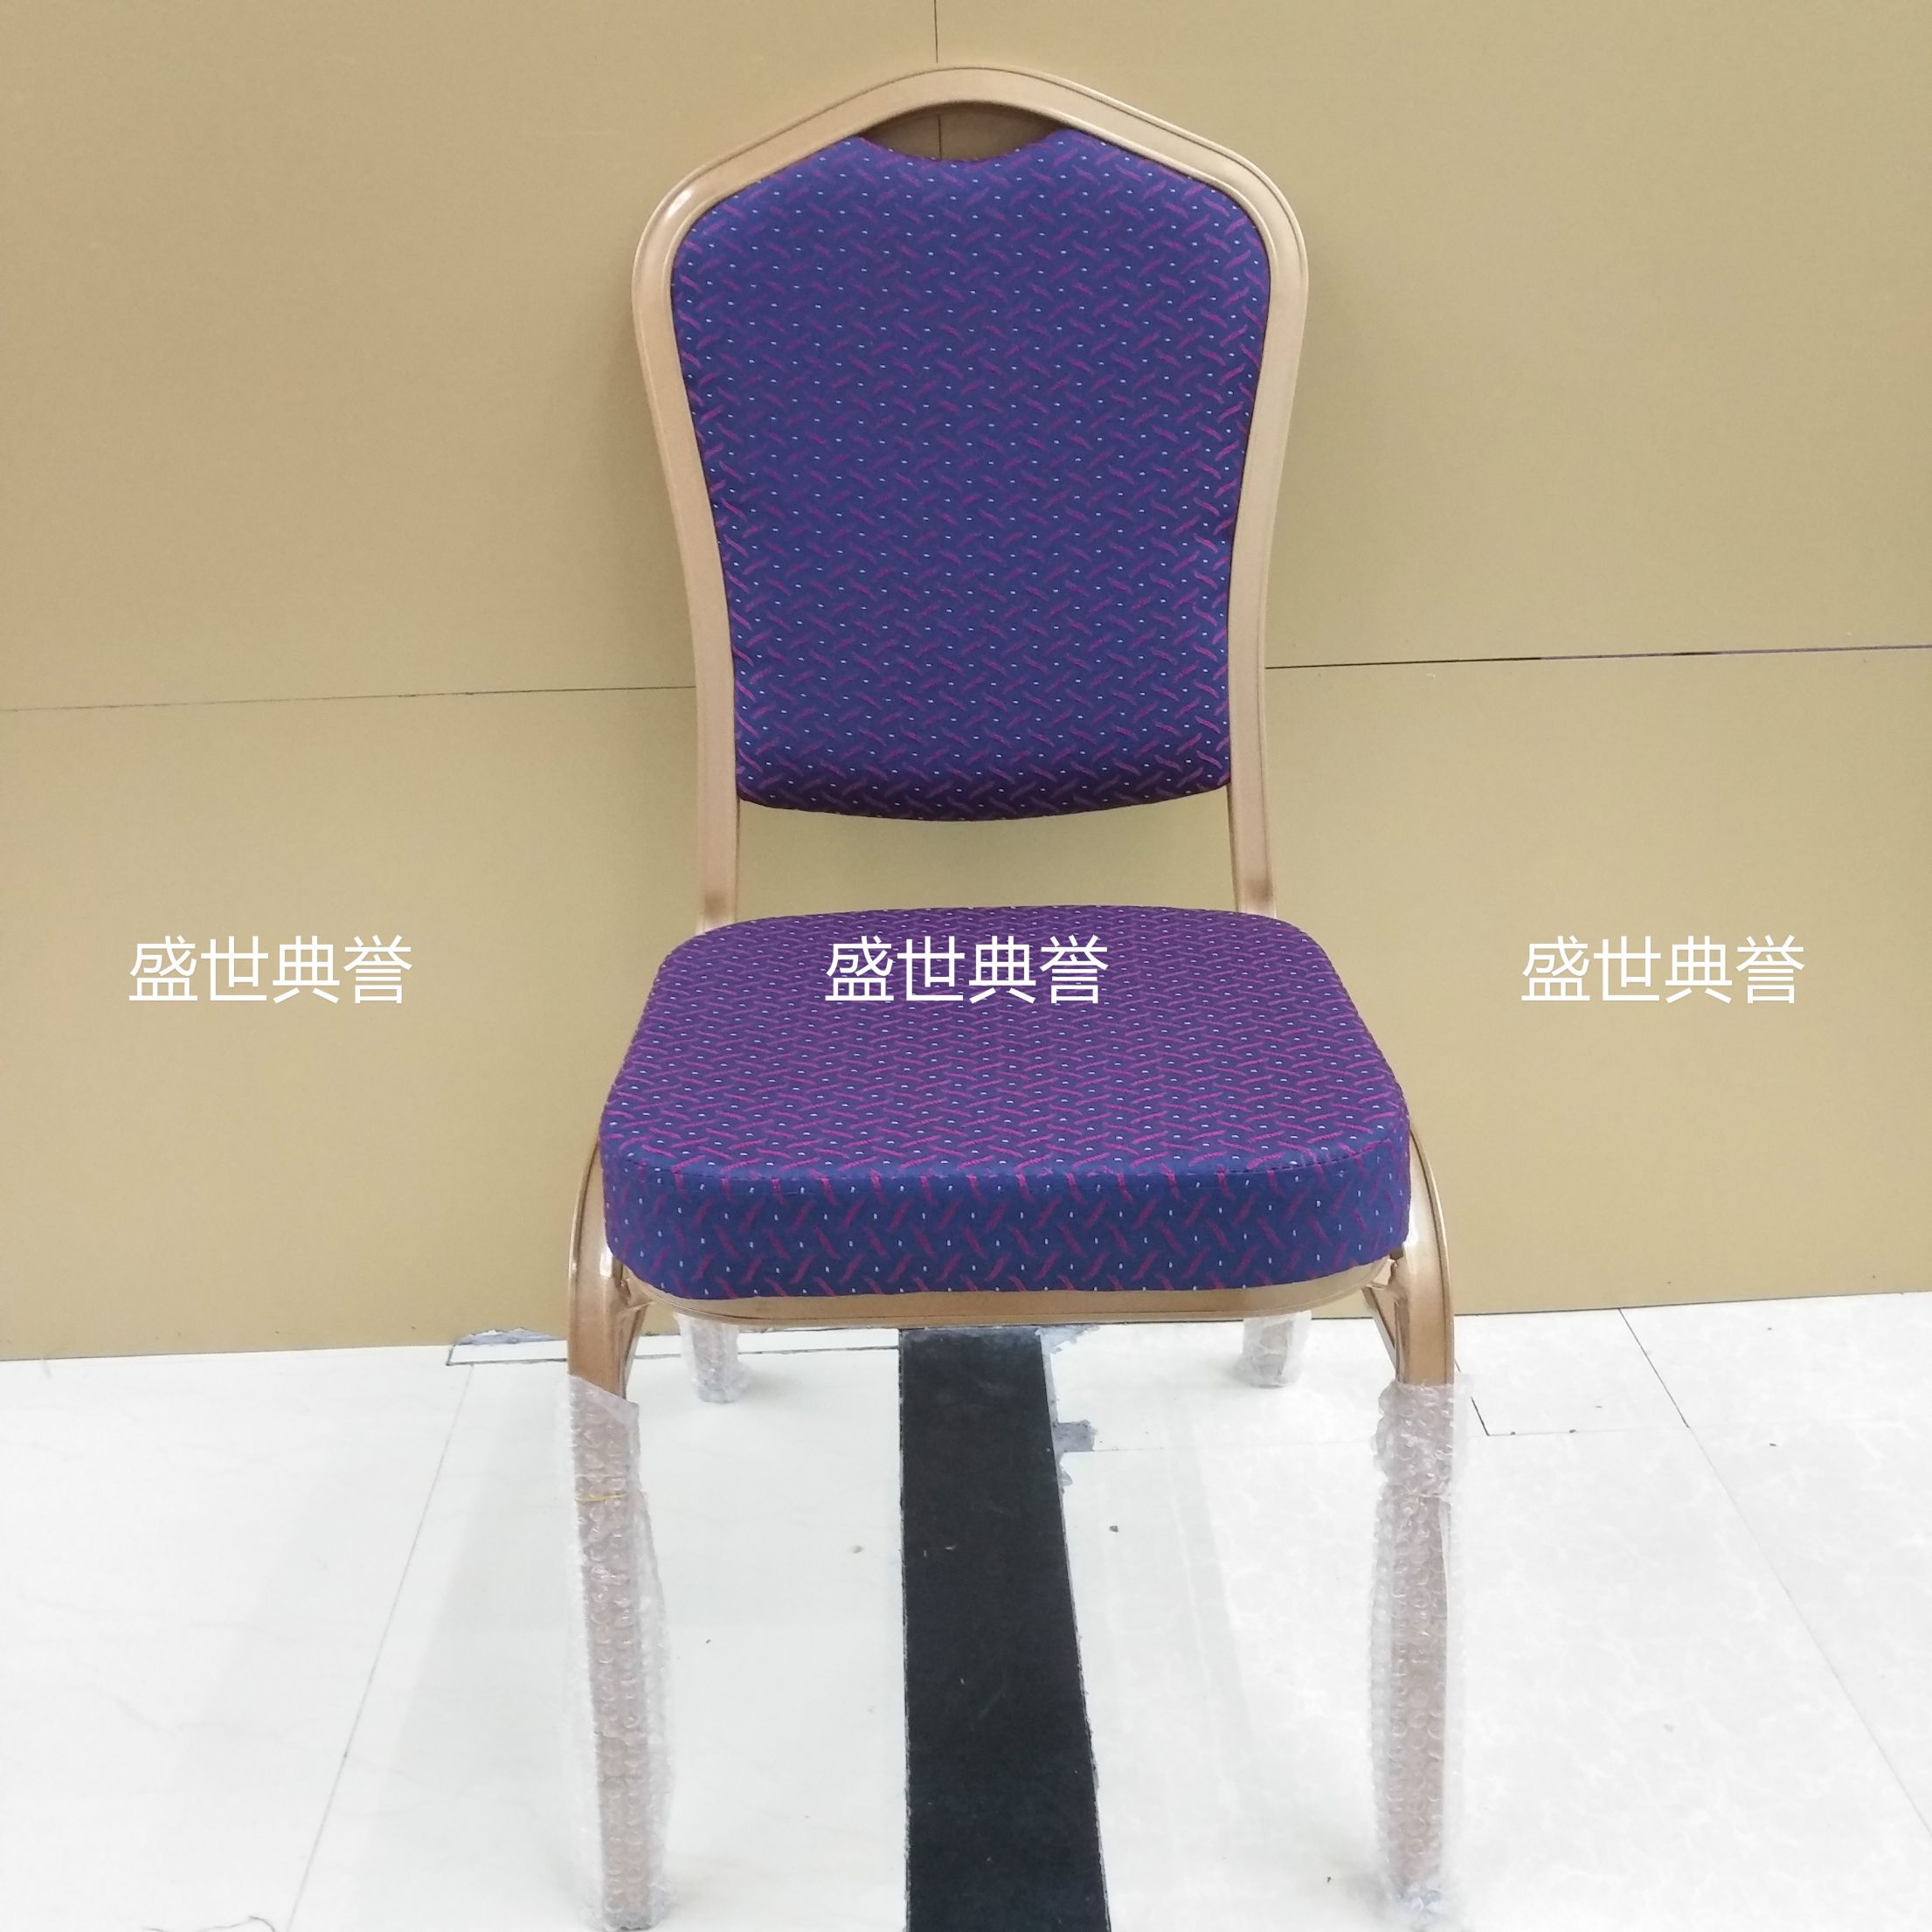 杭州度假酒店宴会家具定做会议中心铝合金椅子饭店婚宴会议桌椅产品图